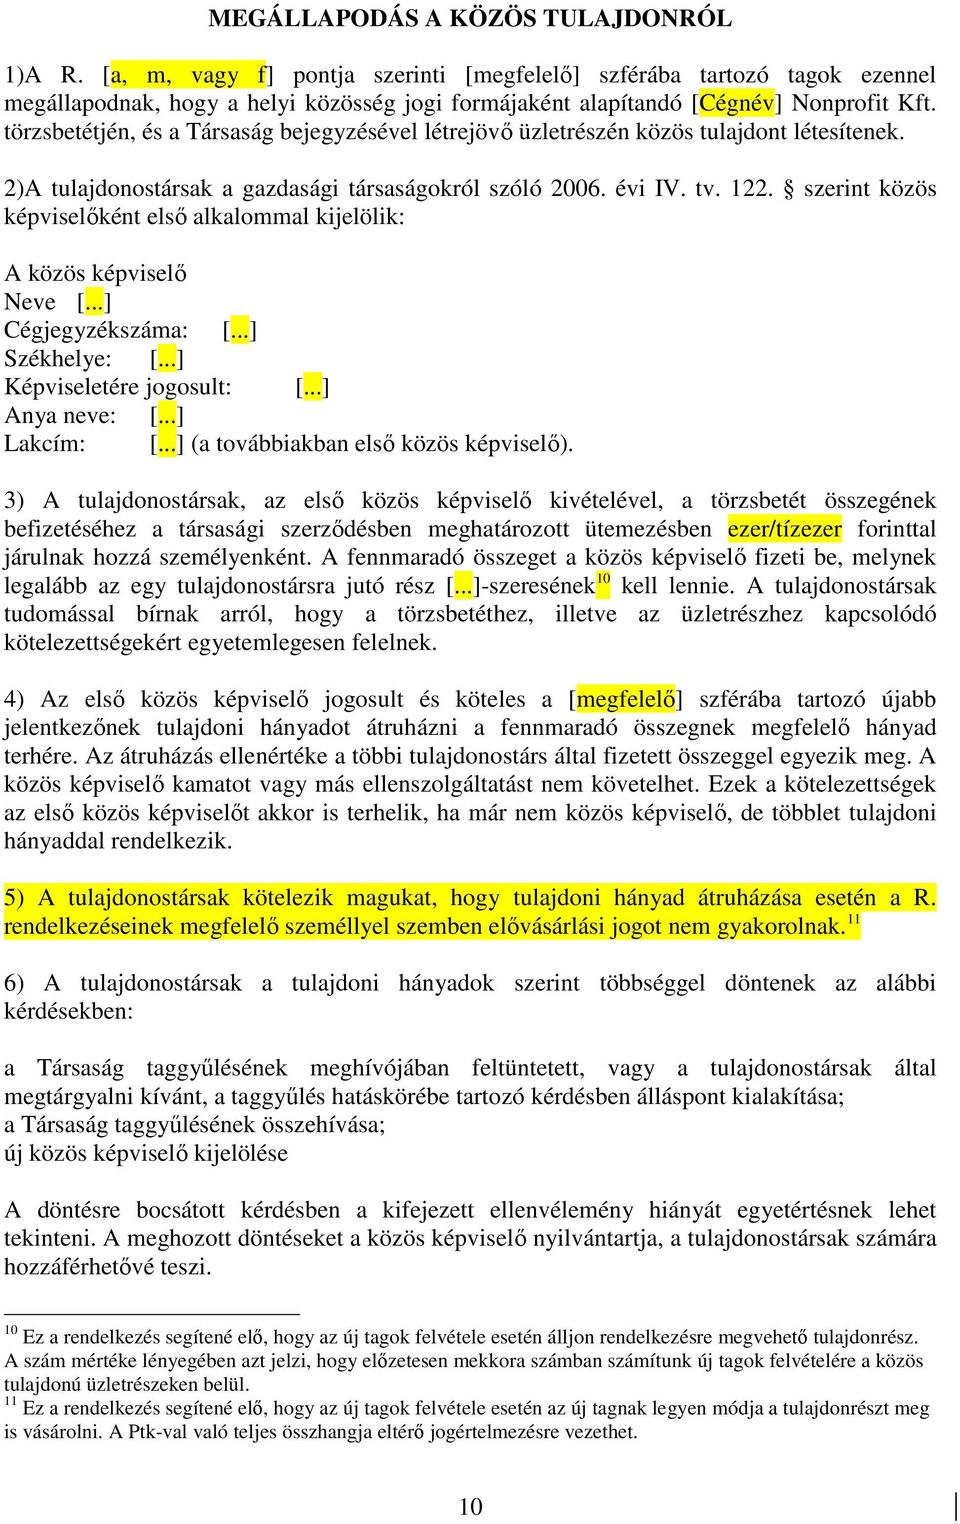 törzsbetétjén, és a Társaság bejegyzésével létrejövı üzletrészén közös tulajdont létesítenek. 2)A tulajdonostársak a gazdasági társaságokról szóló 2006. évi IV. tv. 122.